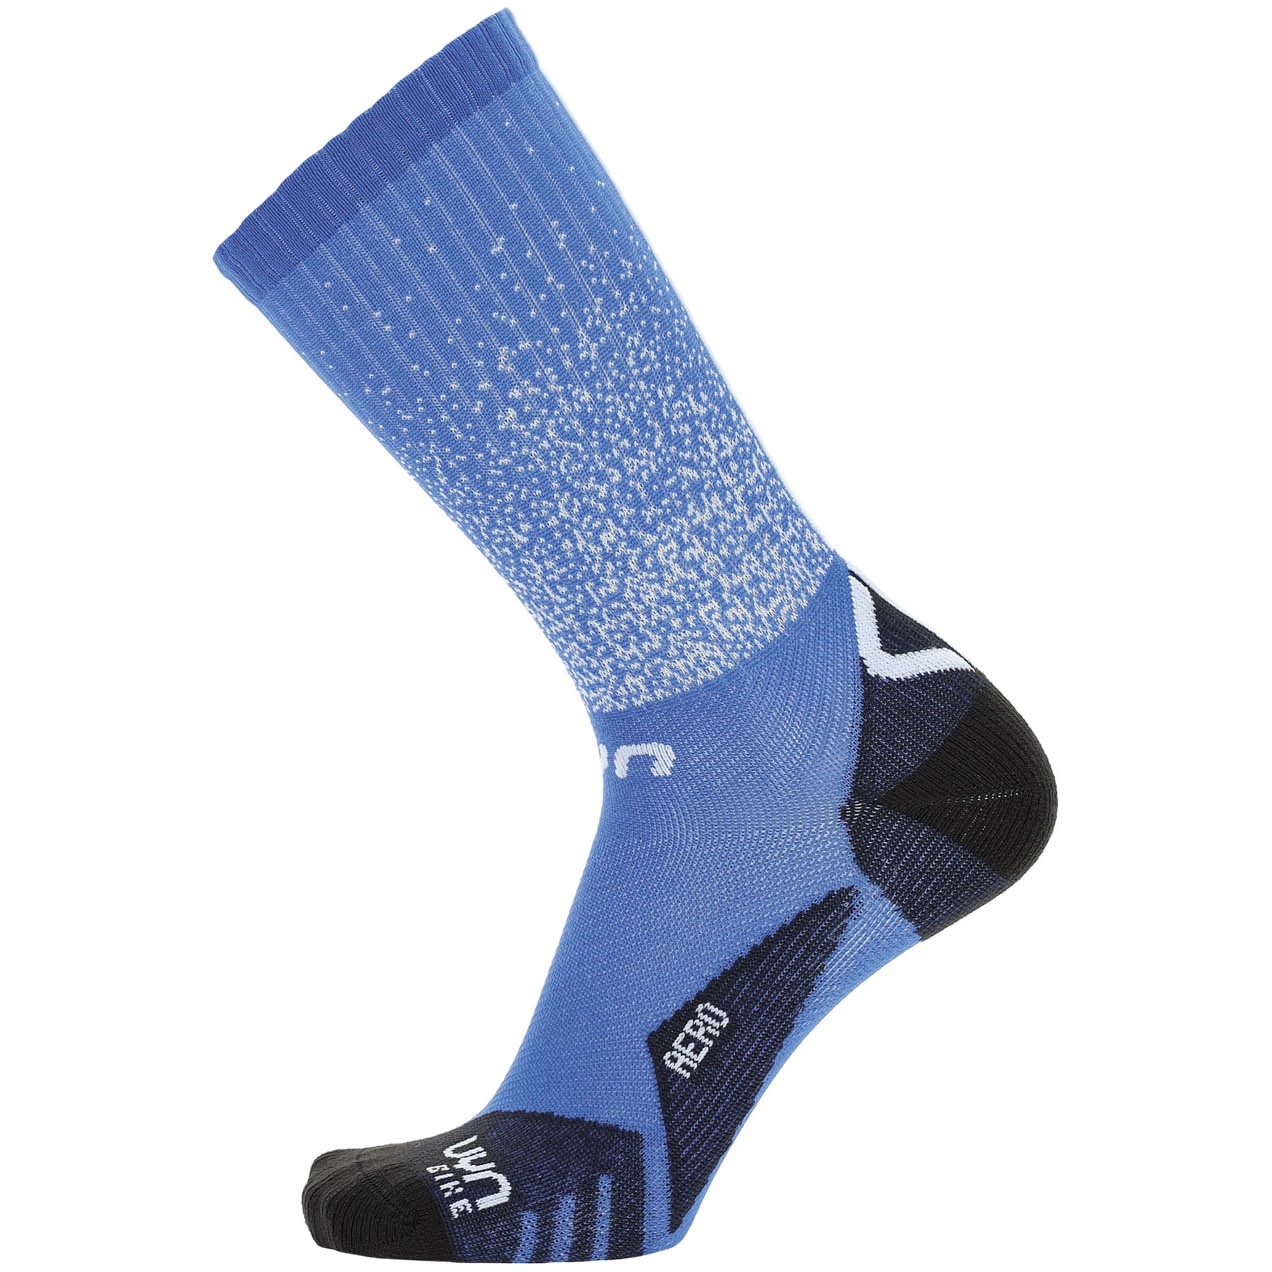 Produktbild von UYN Cycling Aero Socken Herren - Blau/Schwarz